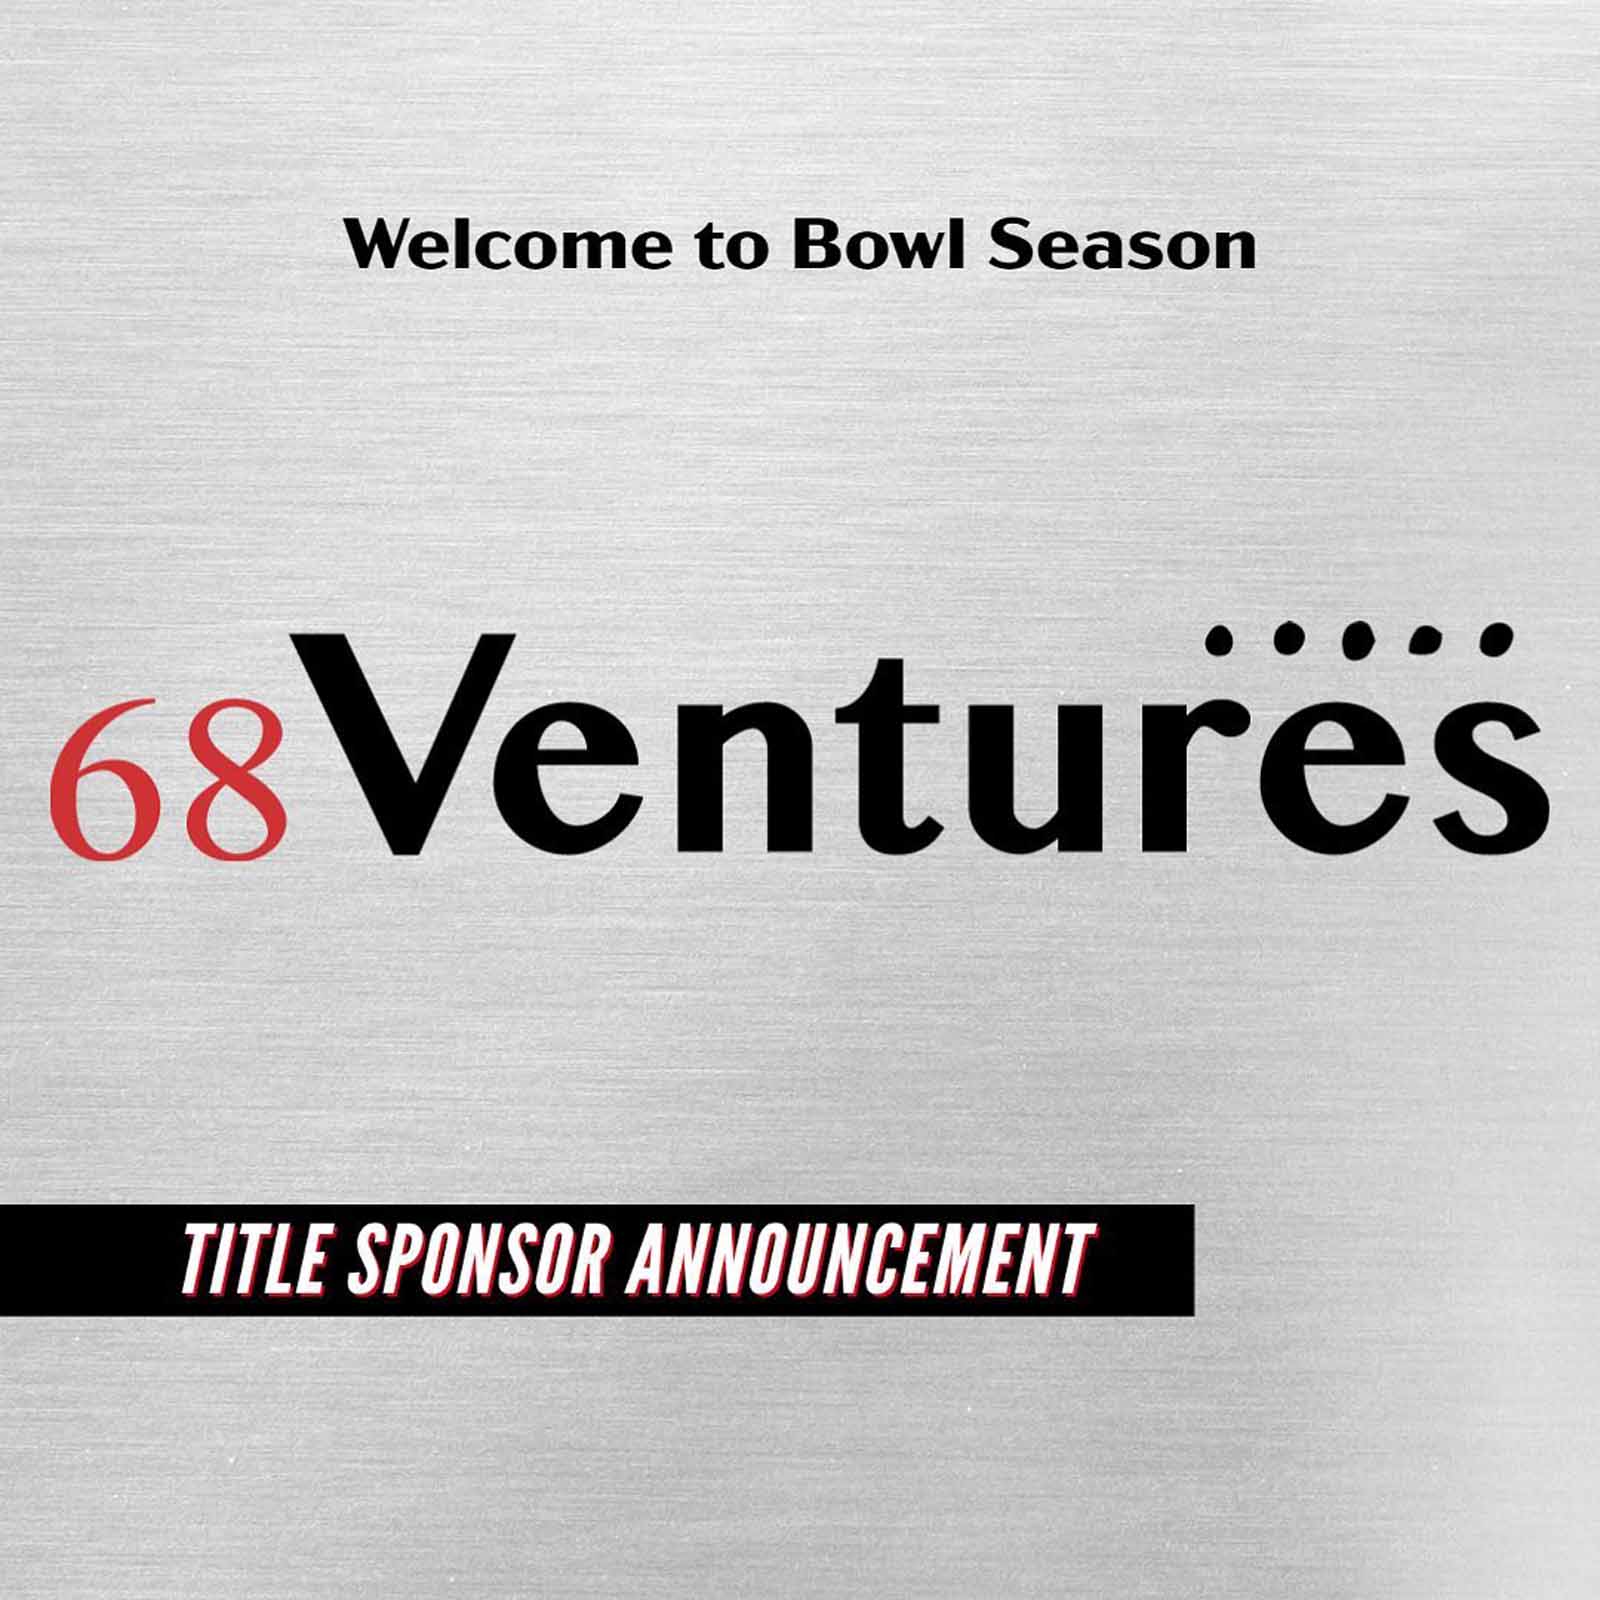 Mobile Alabama Bowl: 68 Ventures Is New Title Sponsor